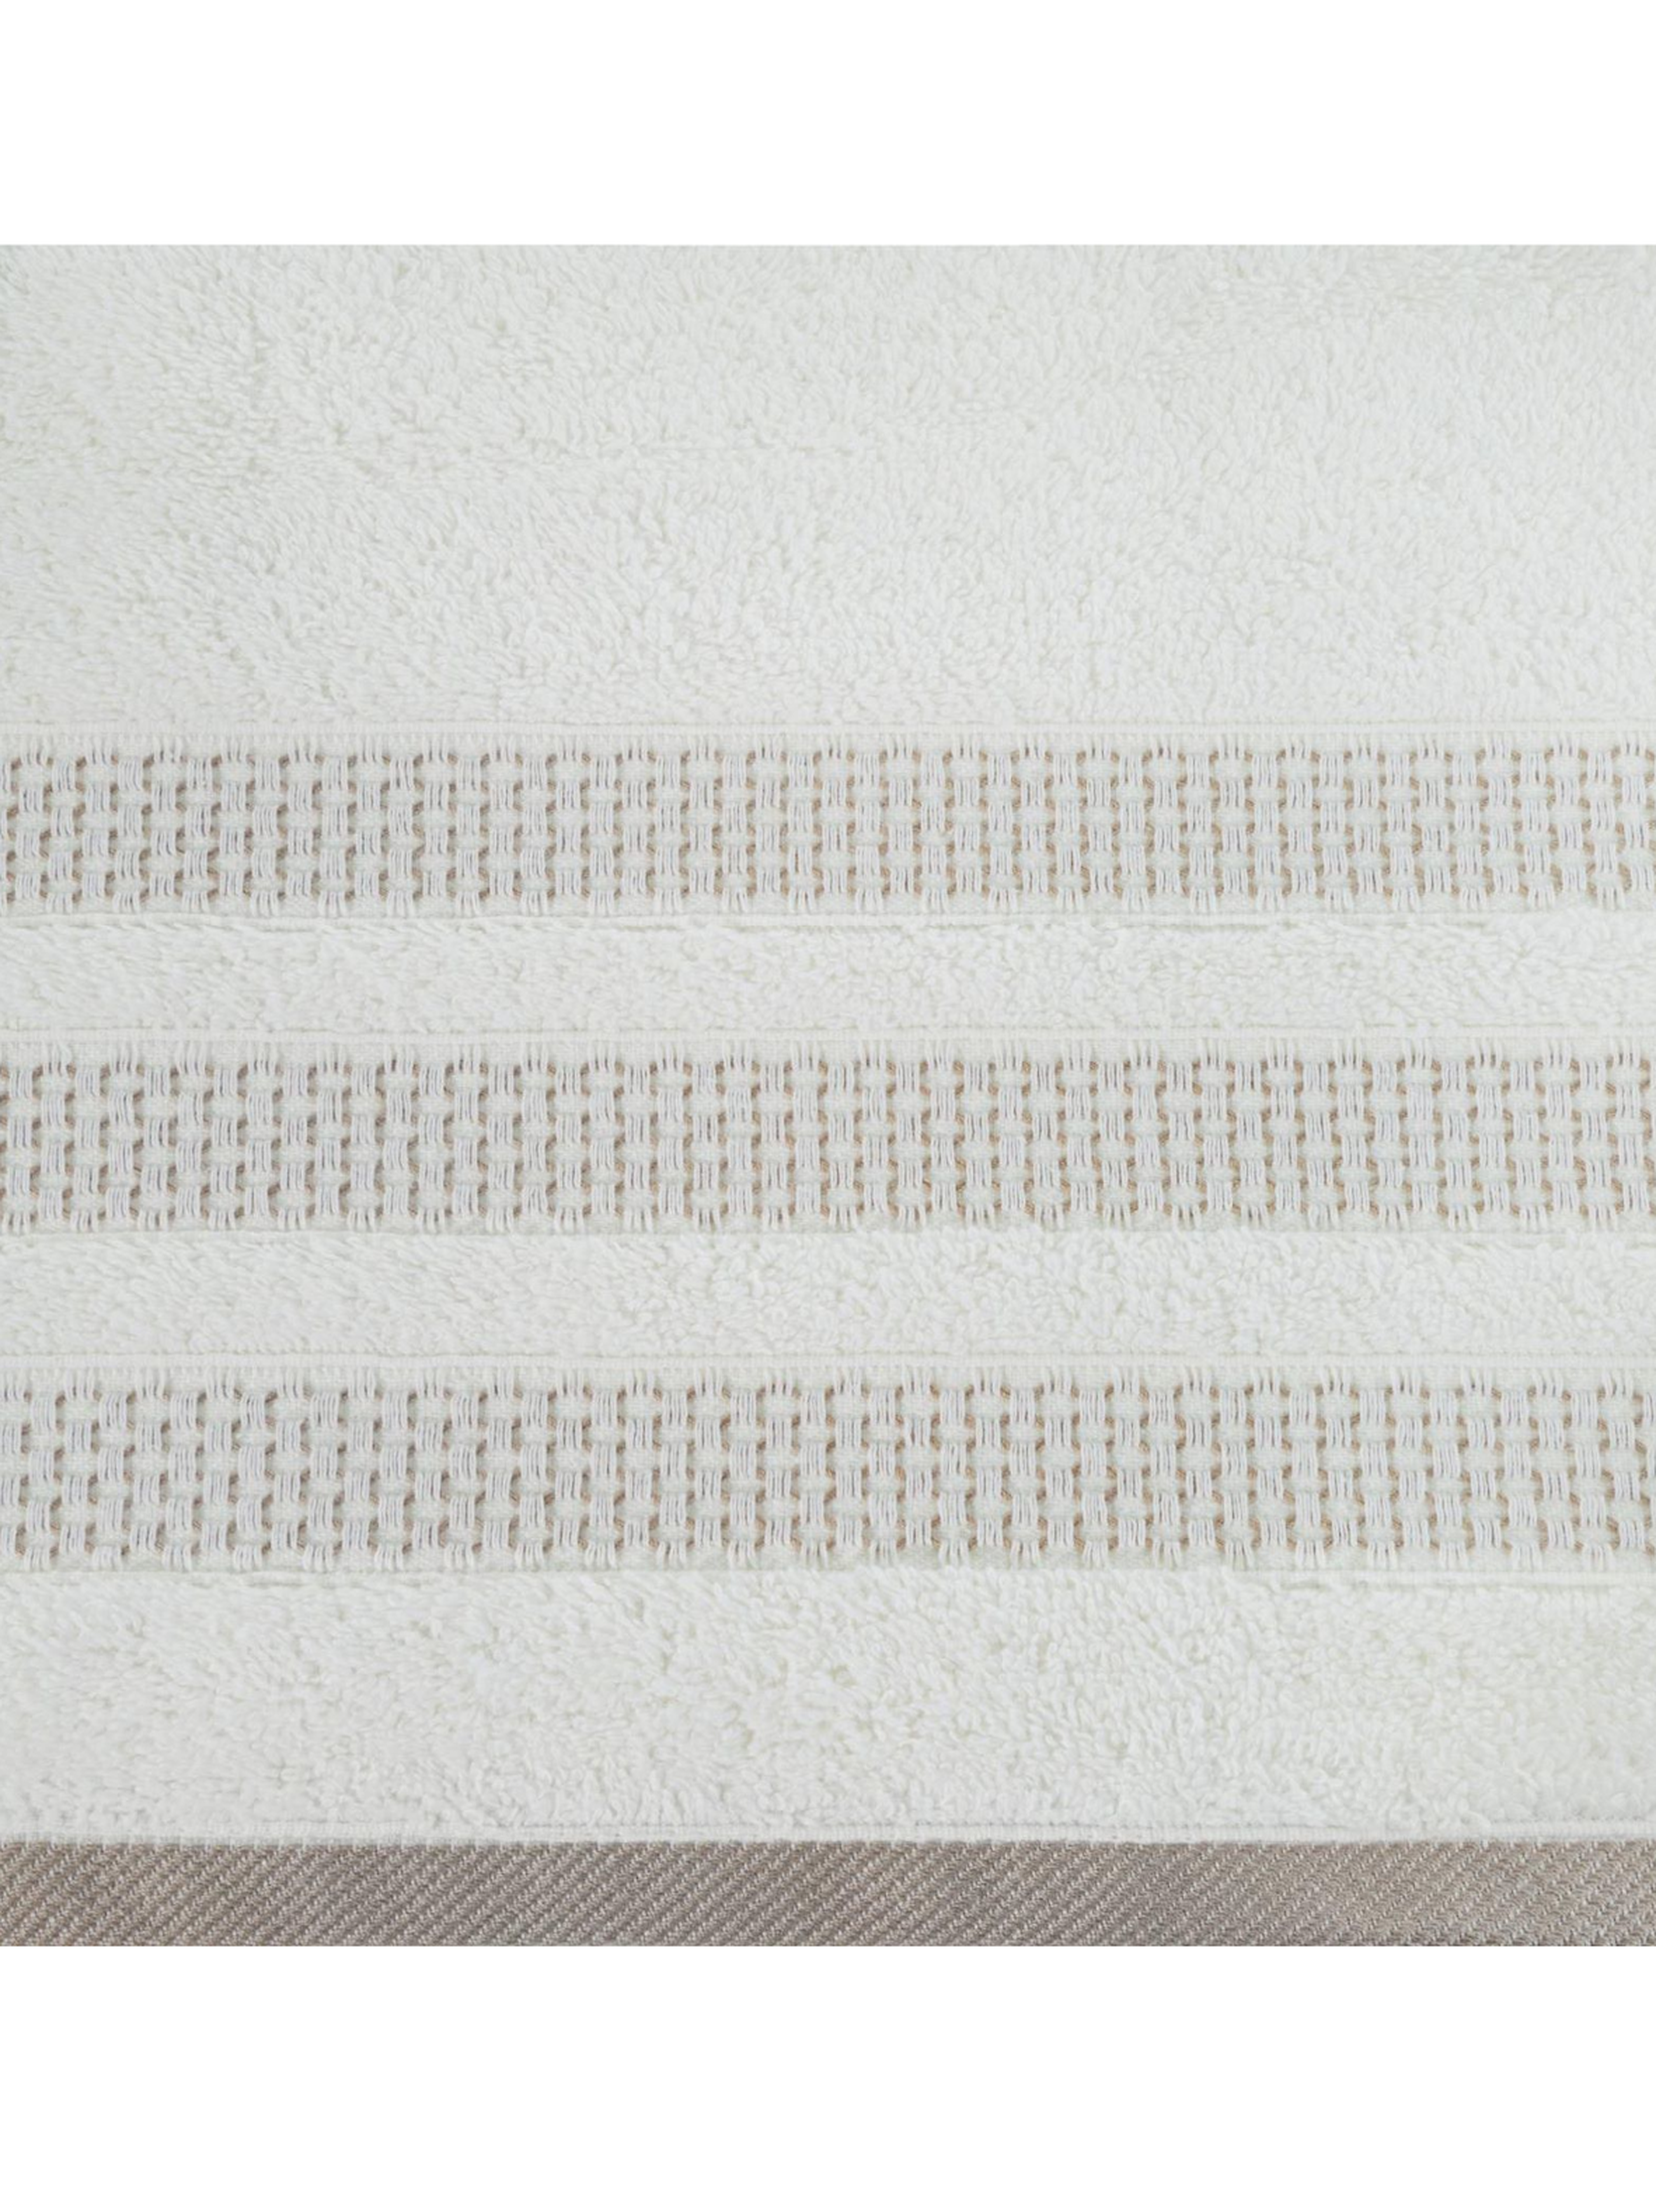 Ręcznik nastia (01) 70x140 cm kremowy